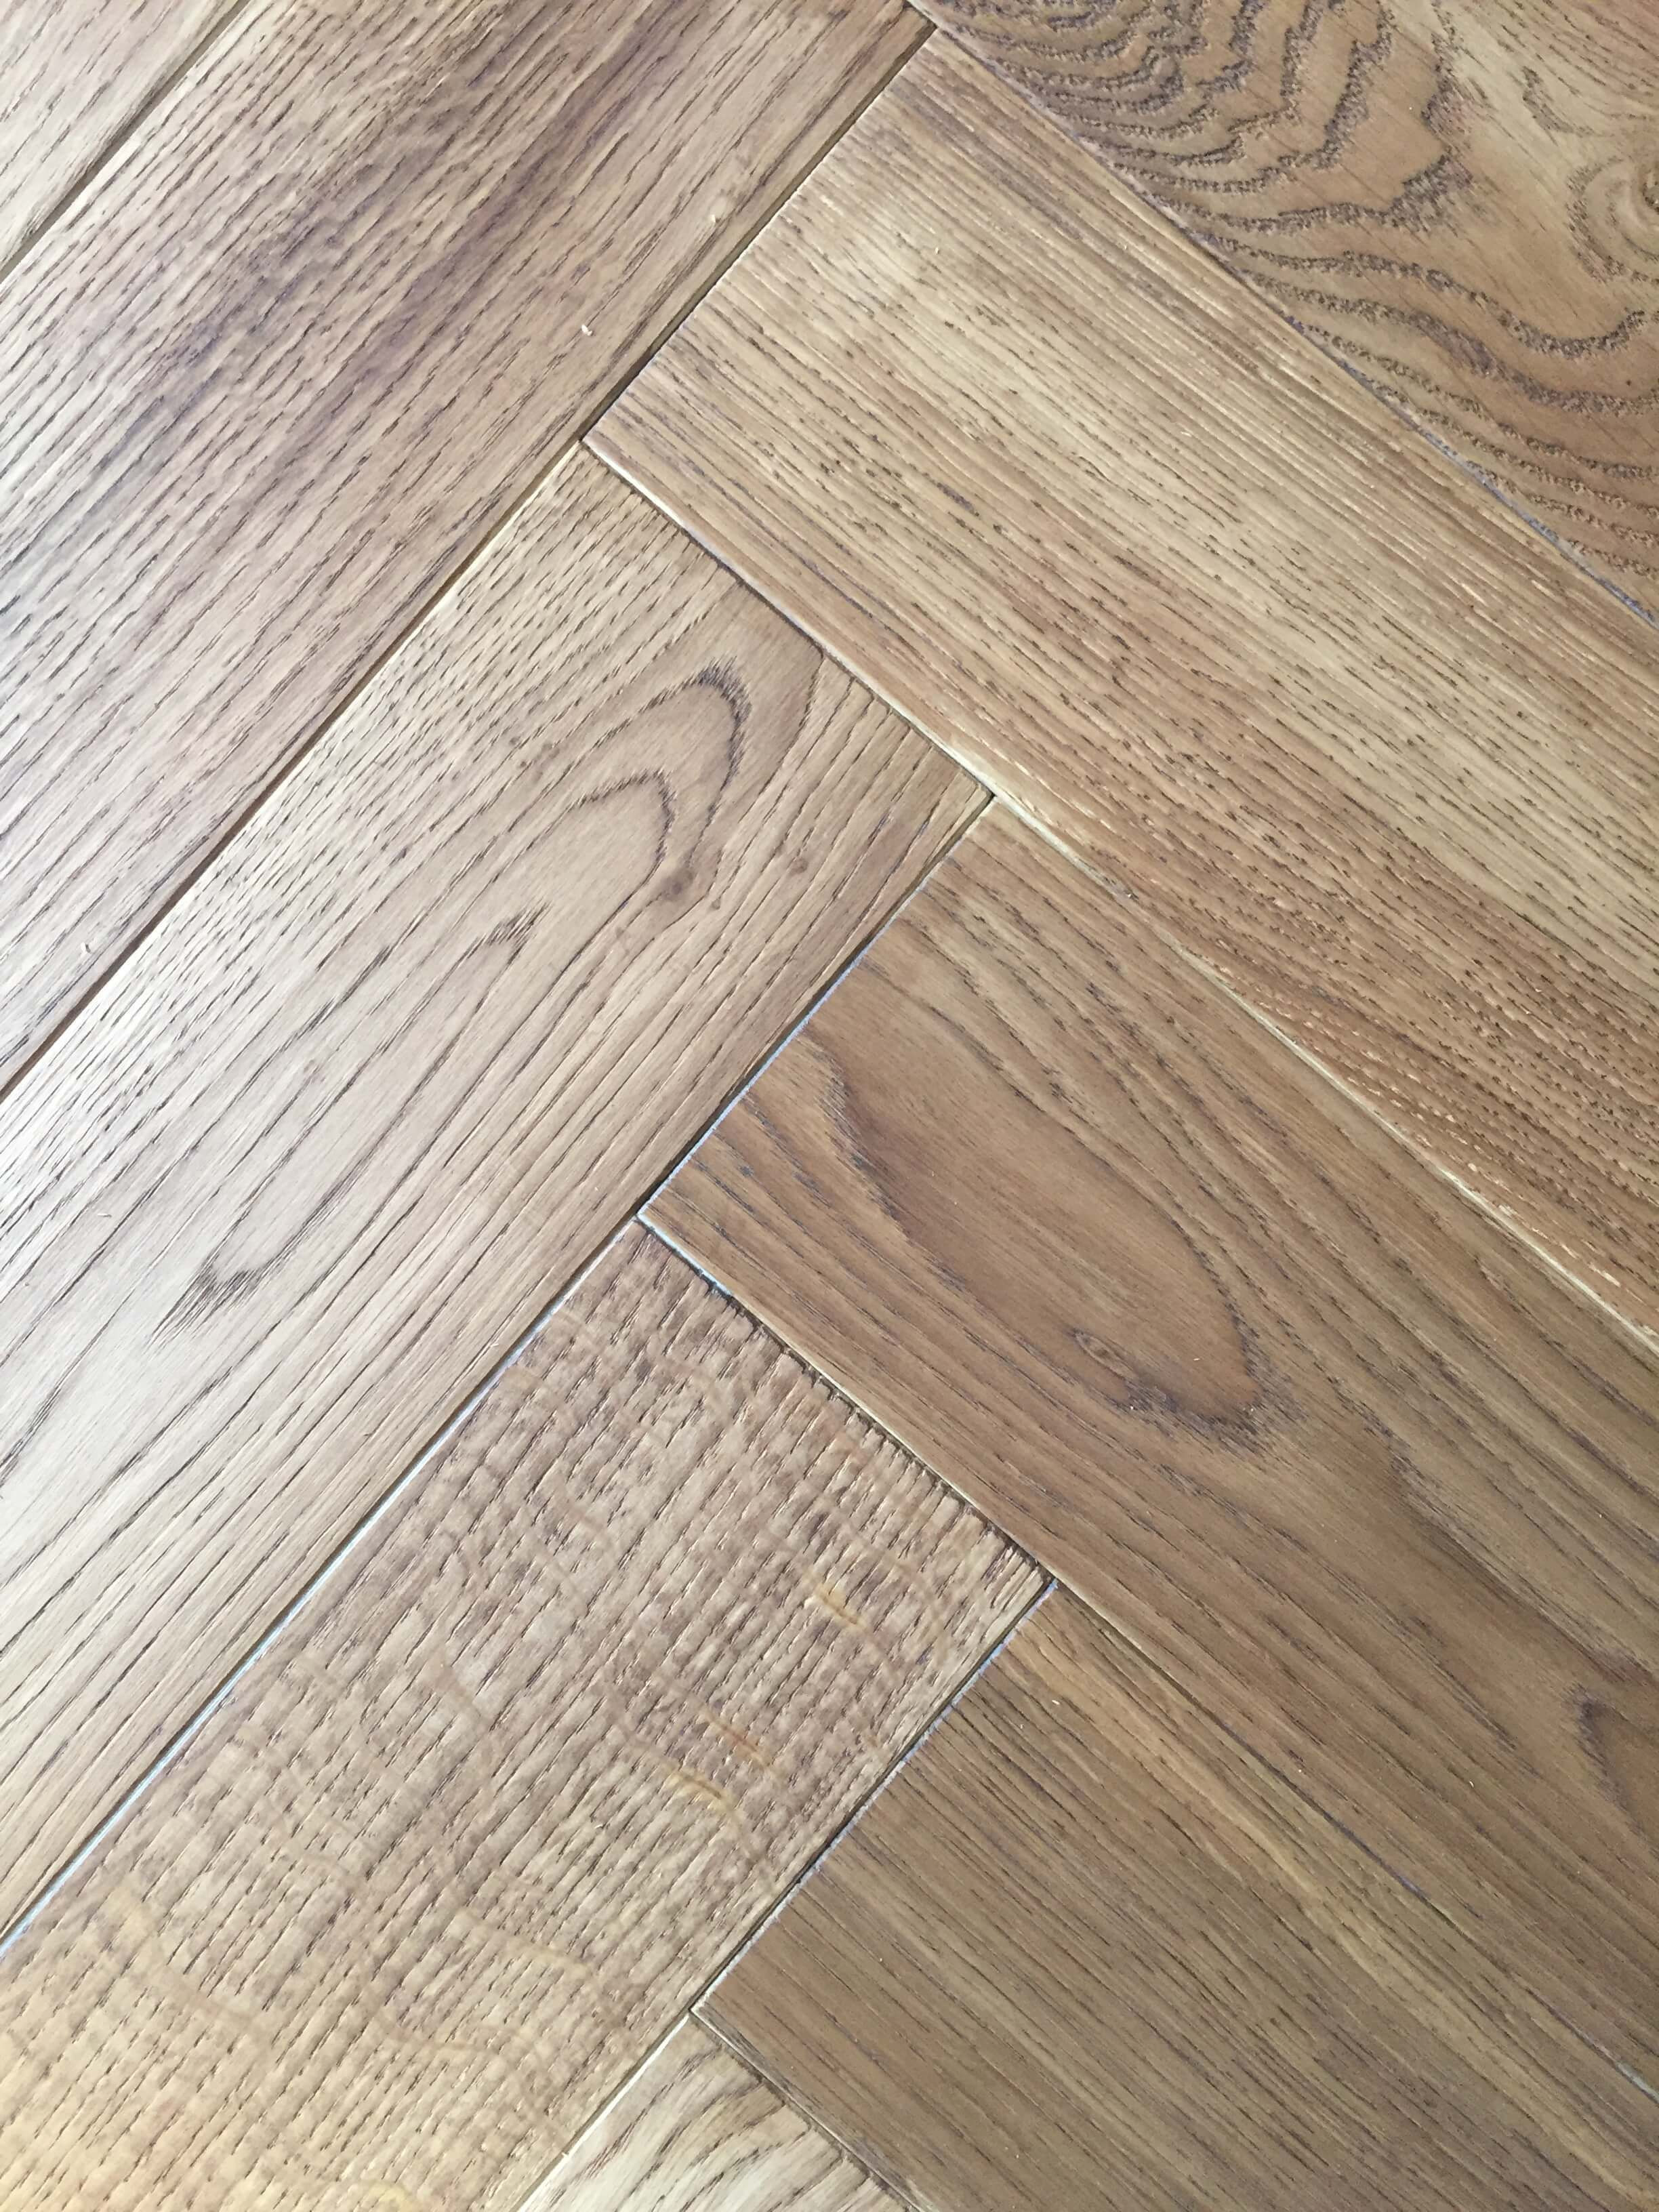 engineered hardwood flooring ratings of laminate flooring reviews floor plan ideas regarding 40 light oak engineered hardwood flooring ideas